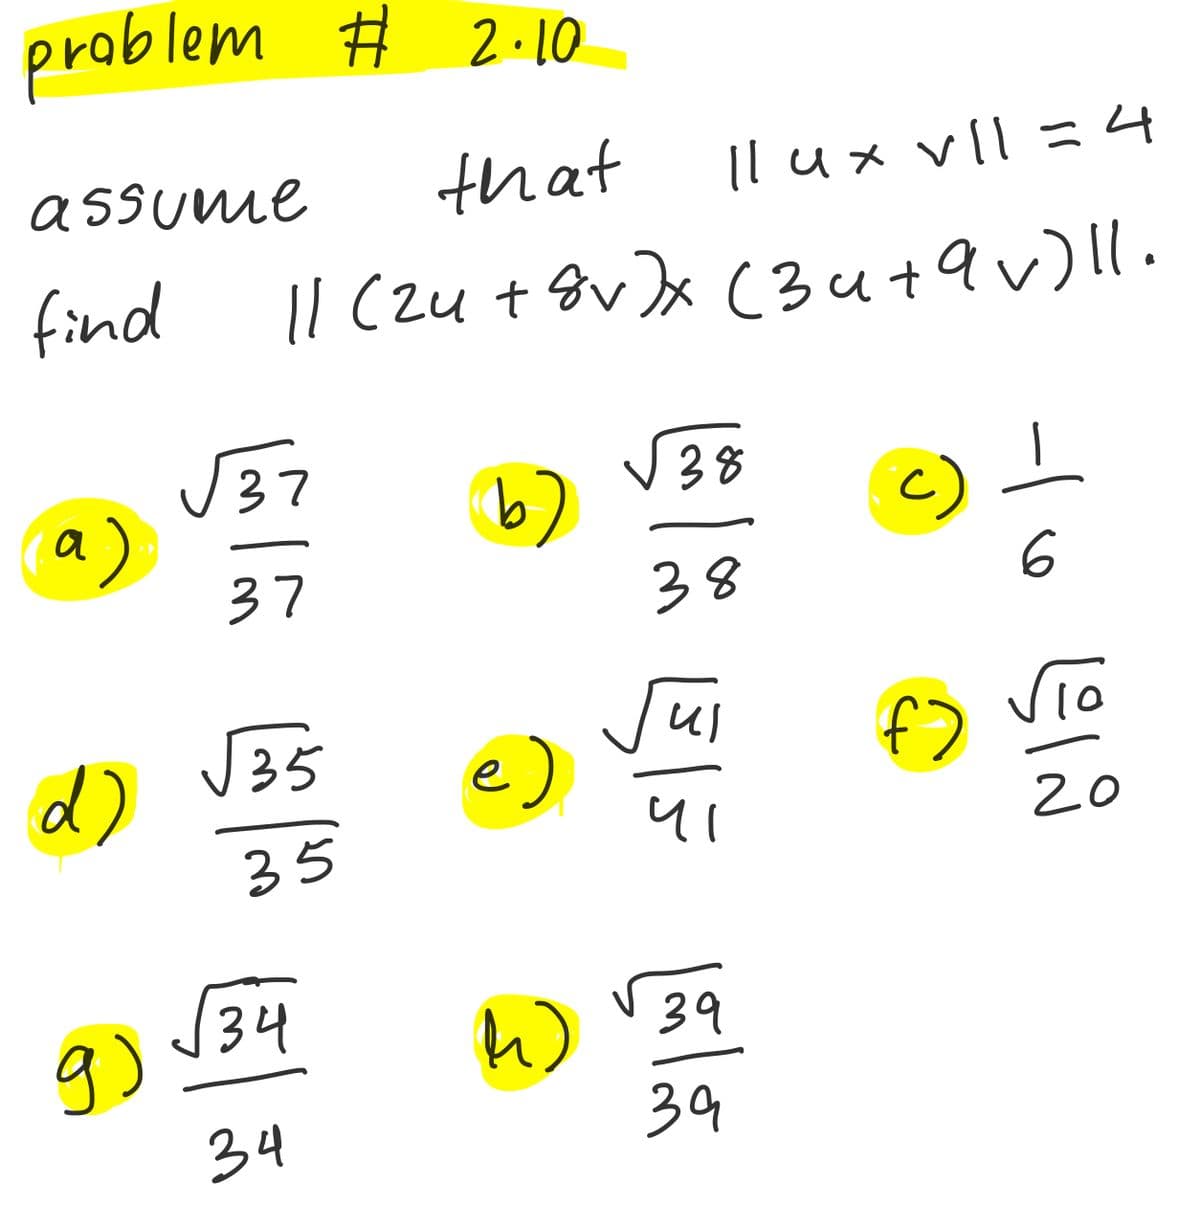 problem # 2 · 10
that
Il ux vll =4
メ
assume
Il (zu + &v)x C3u+9v)|l.
puind
J37
a)
37
V38
b)
38
J35
d)
Jui
e)
vio
f)
20
35
(34
W 39
9)
39
34
